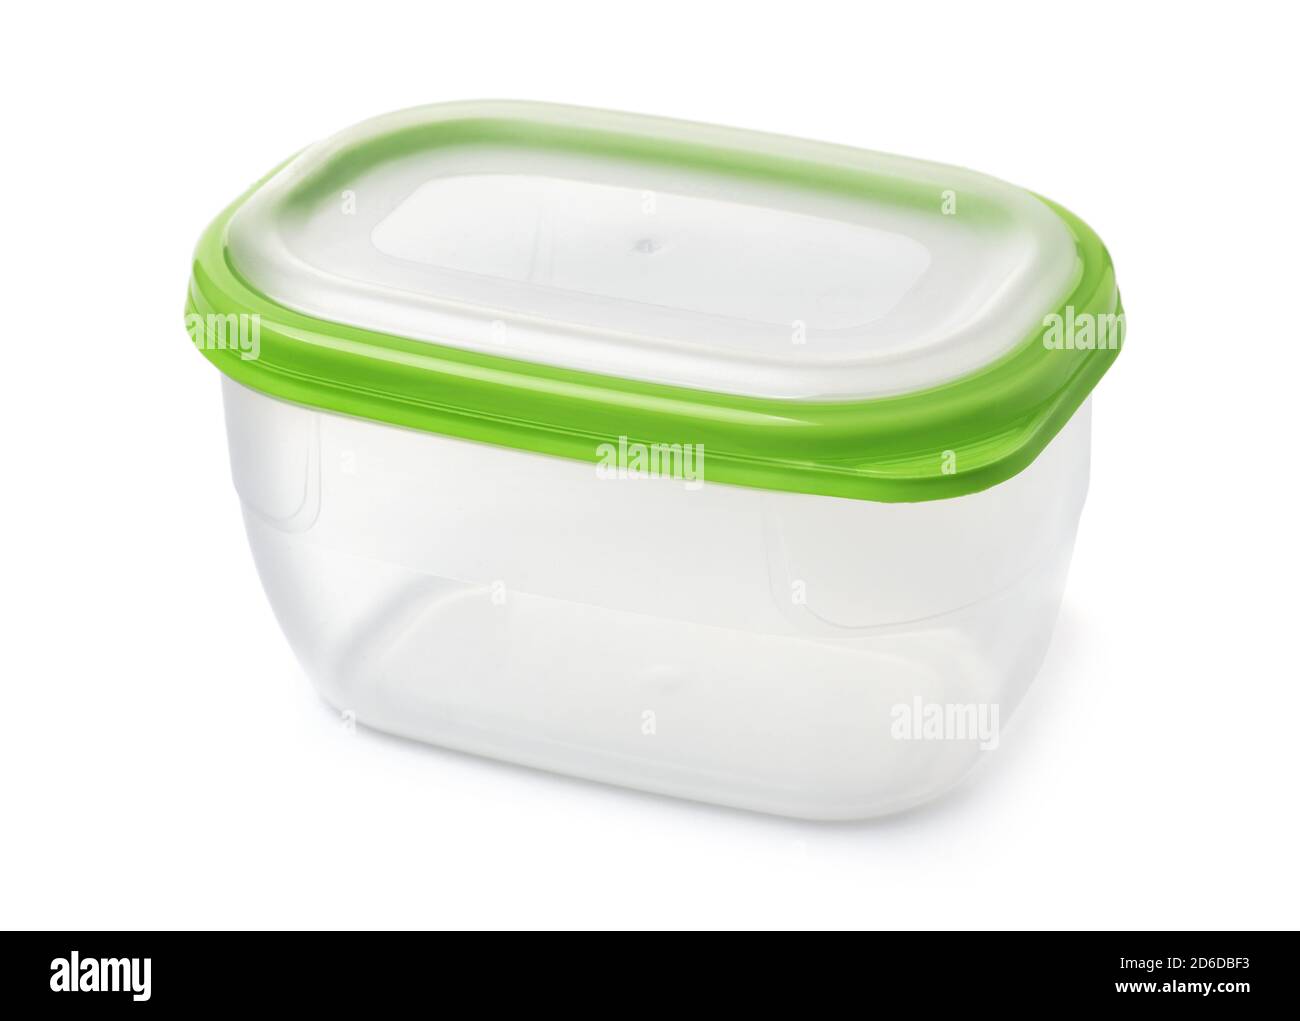 Conteneur de stockage alimentaire en plastique avec couvercle vert isolé sur blanc Banque D'Images